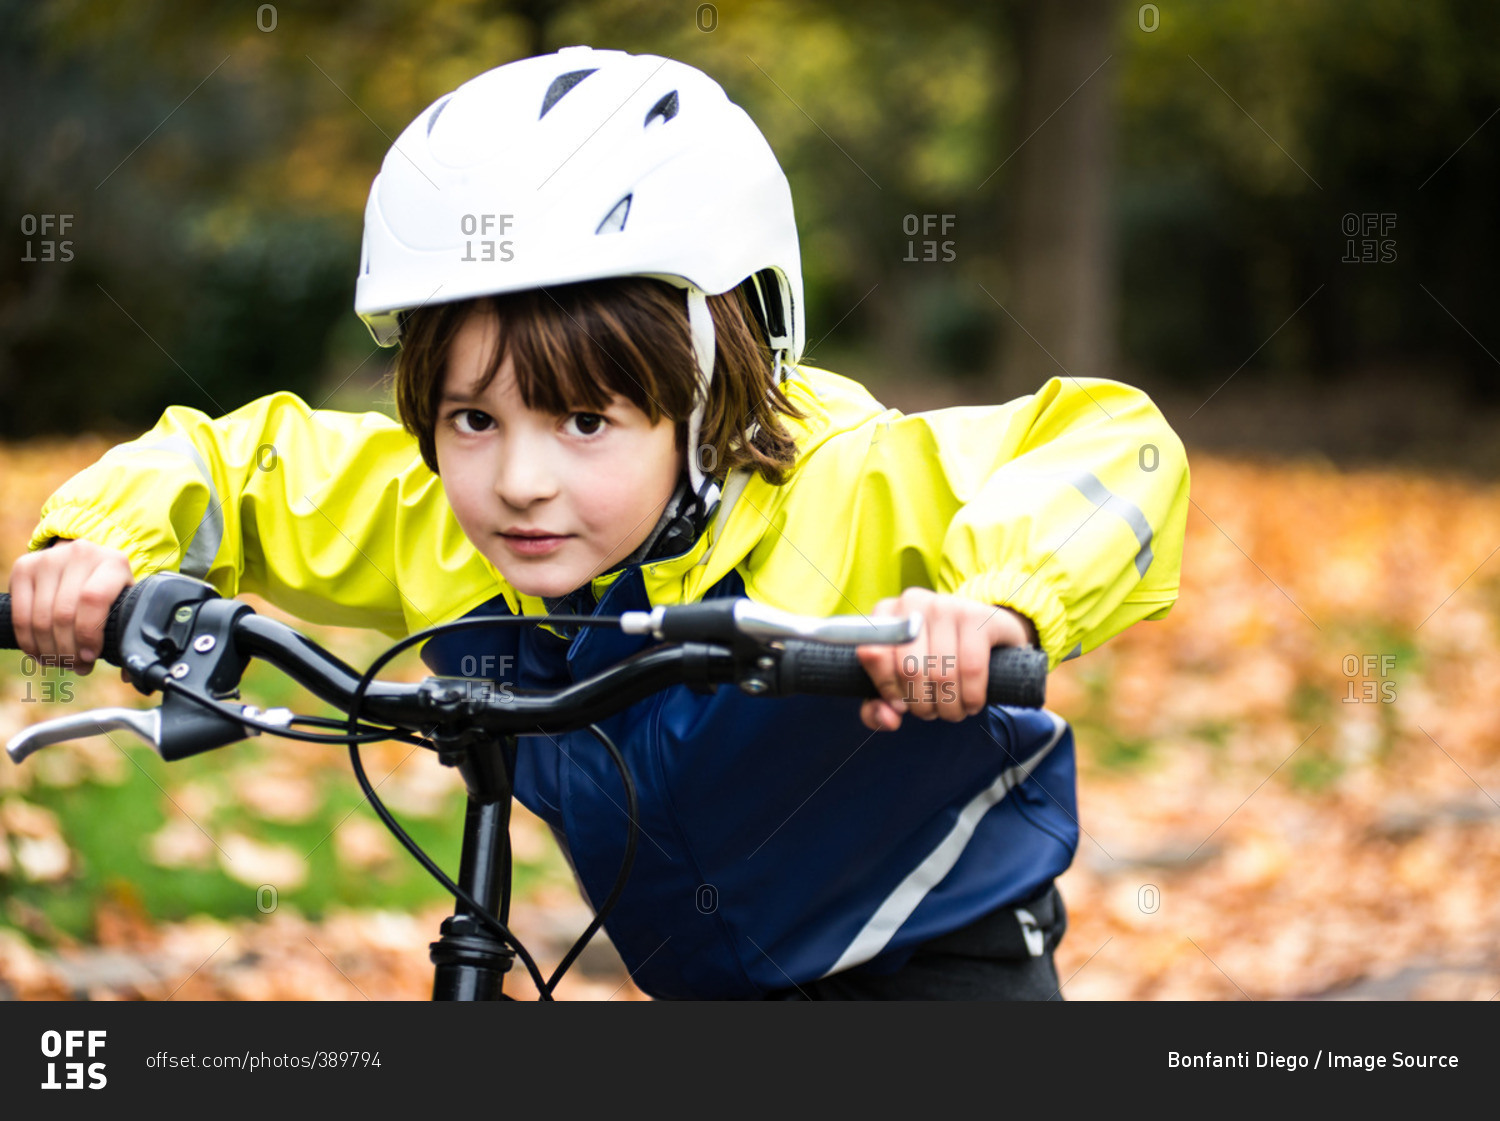 Boy wearing bicycle helmet on bicycle looking